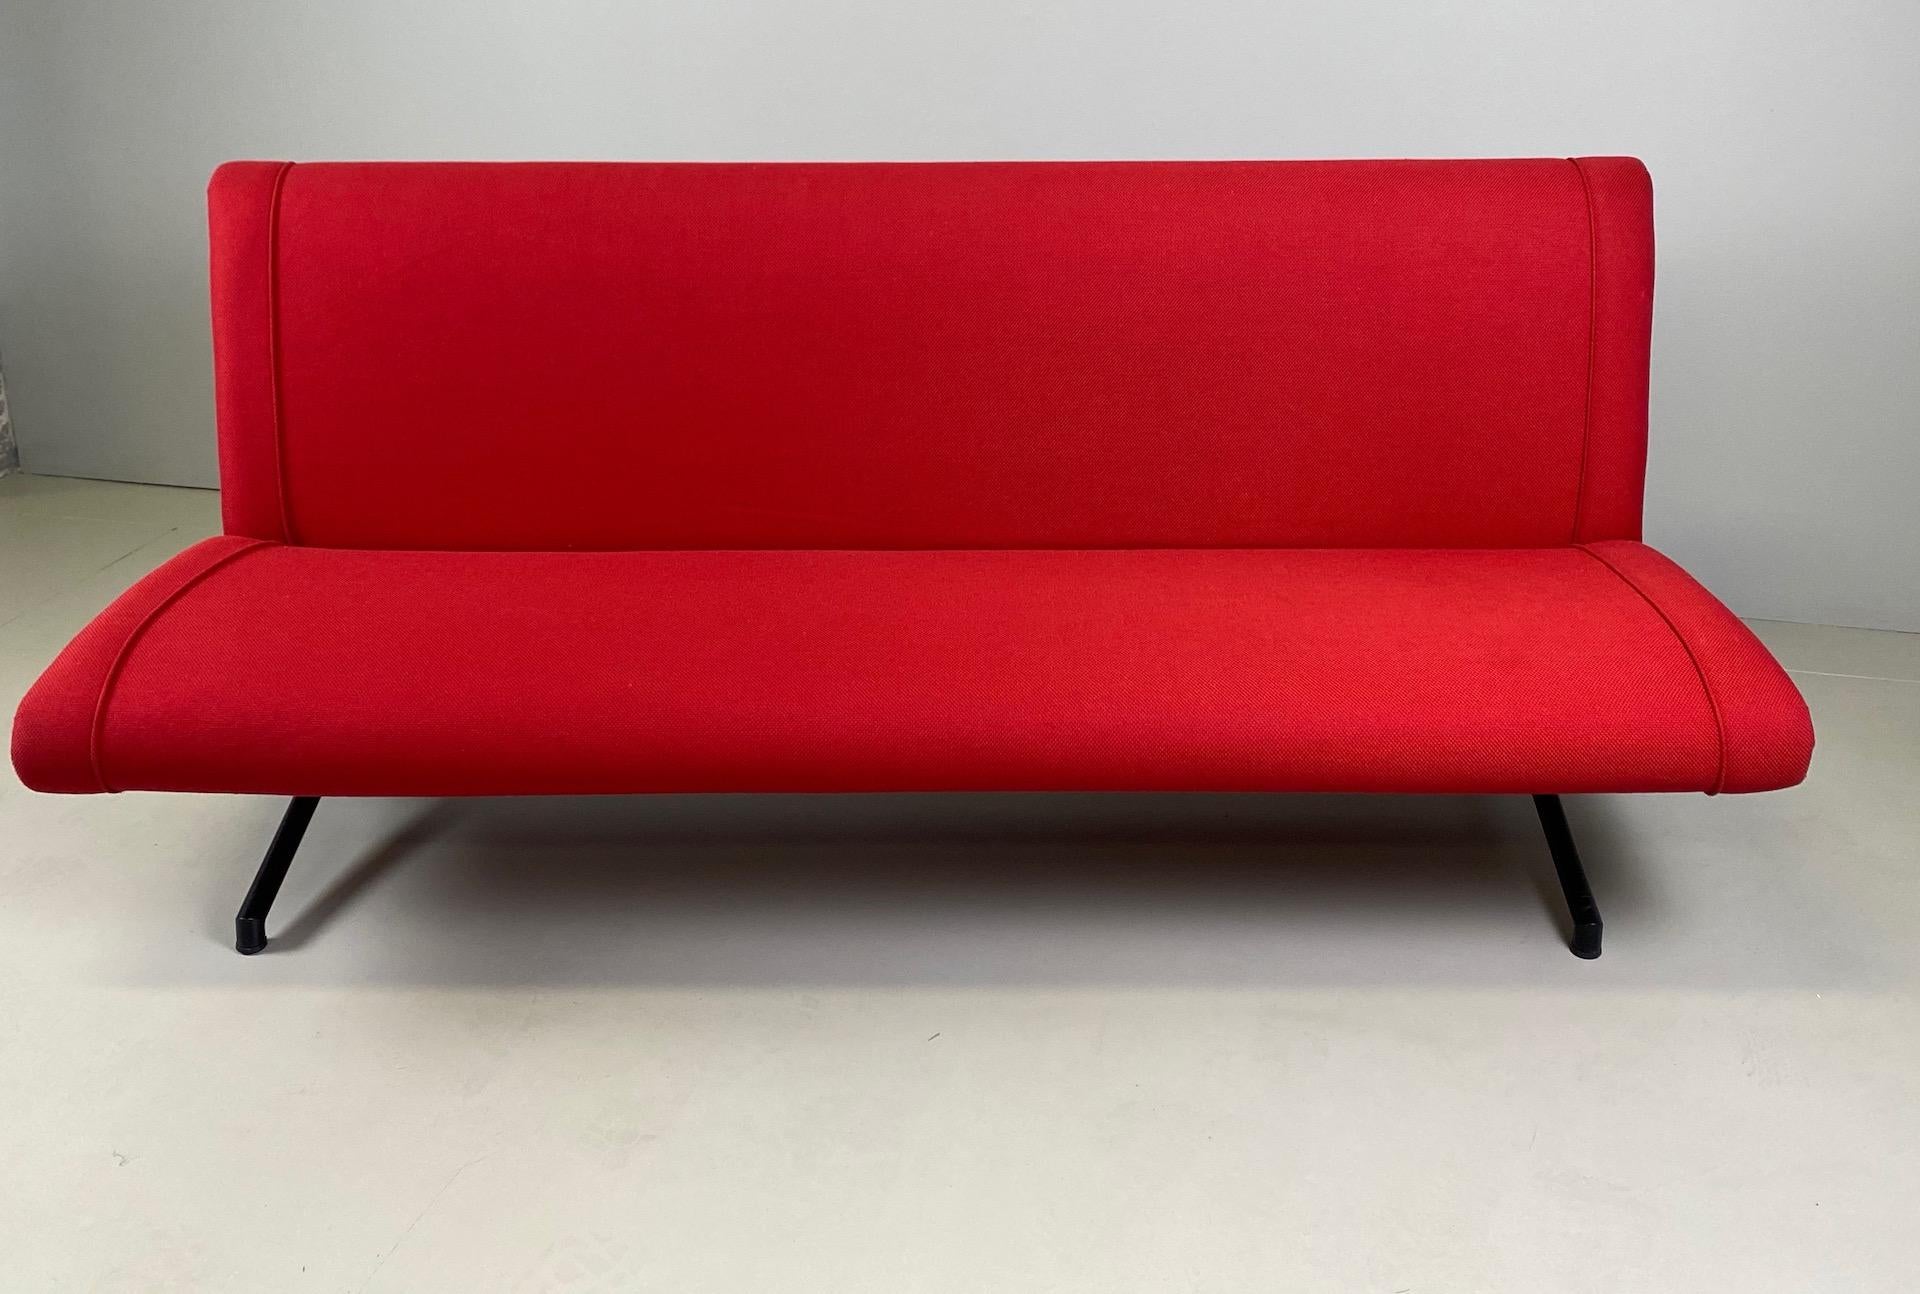 Steel Osvaldo Borsani 'D70' Red Sofa Daybed for Tecno